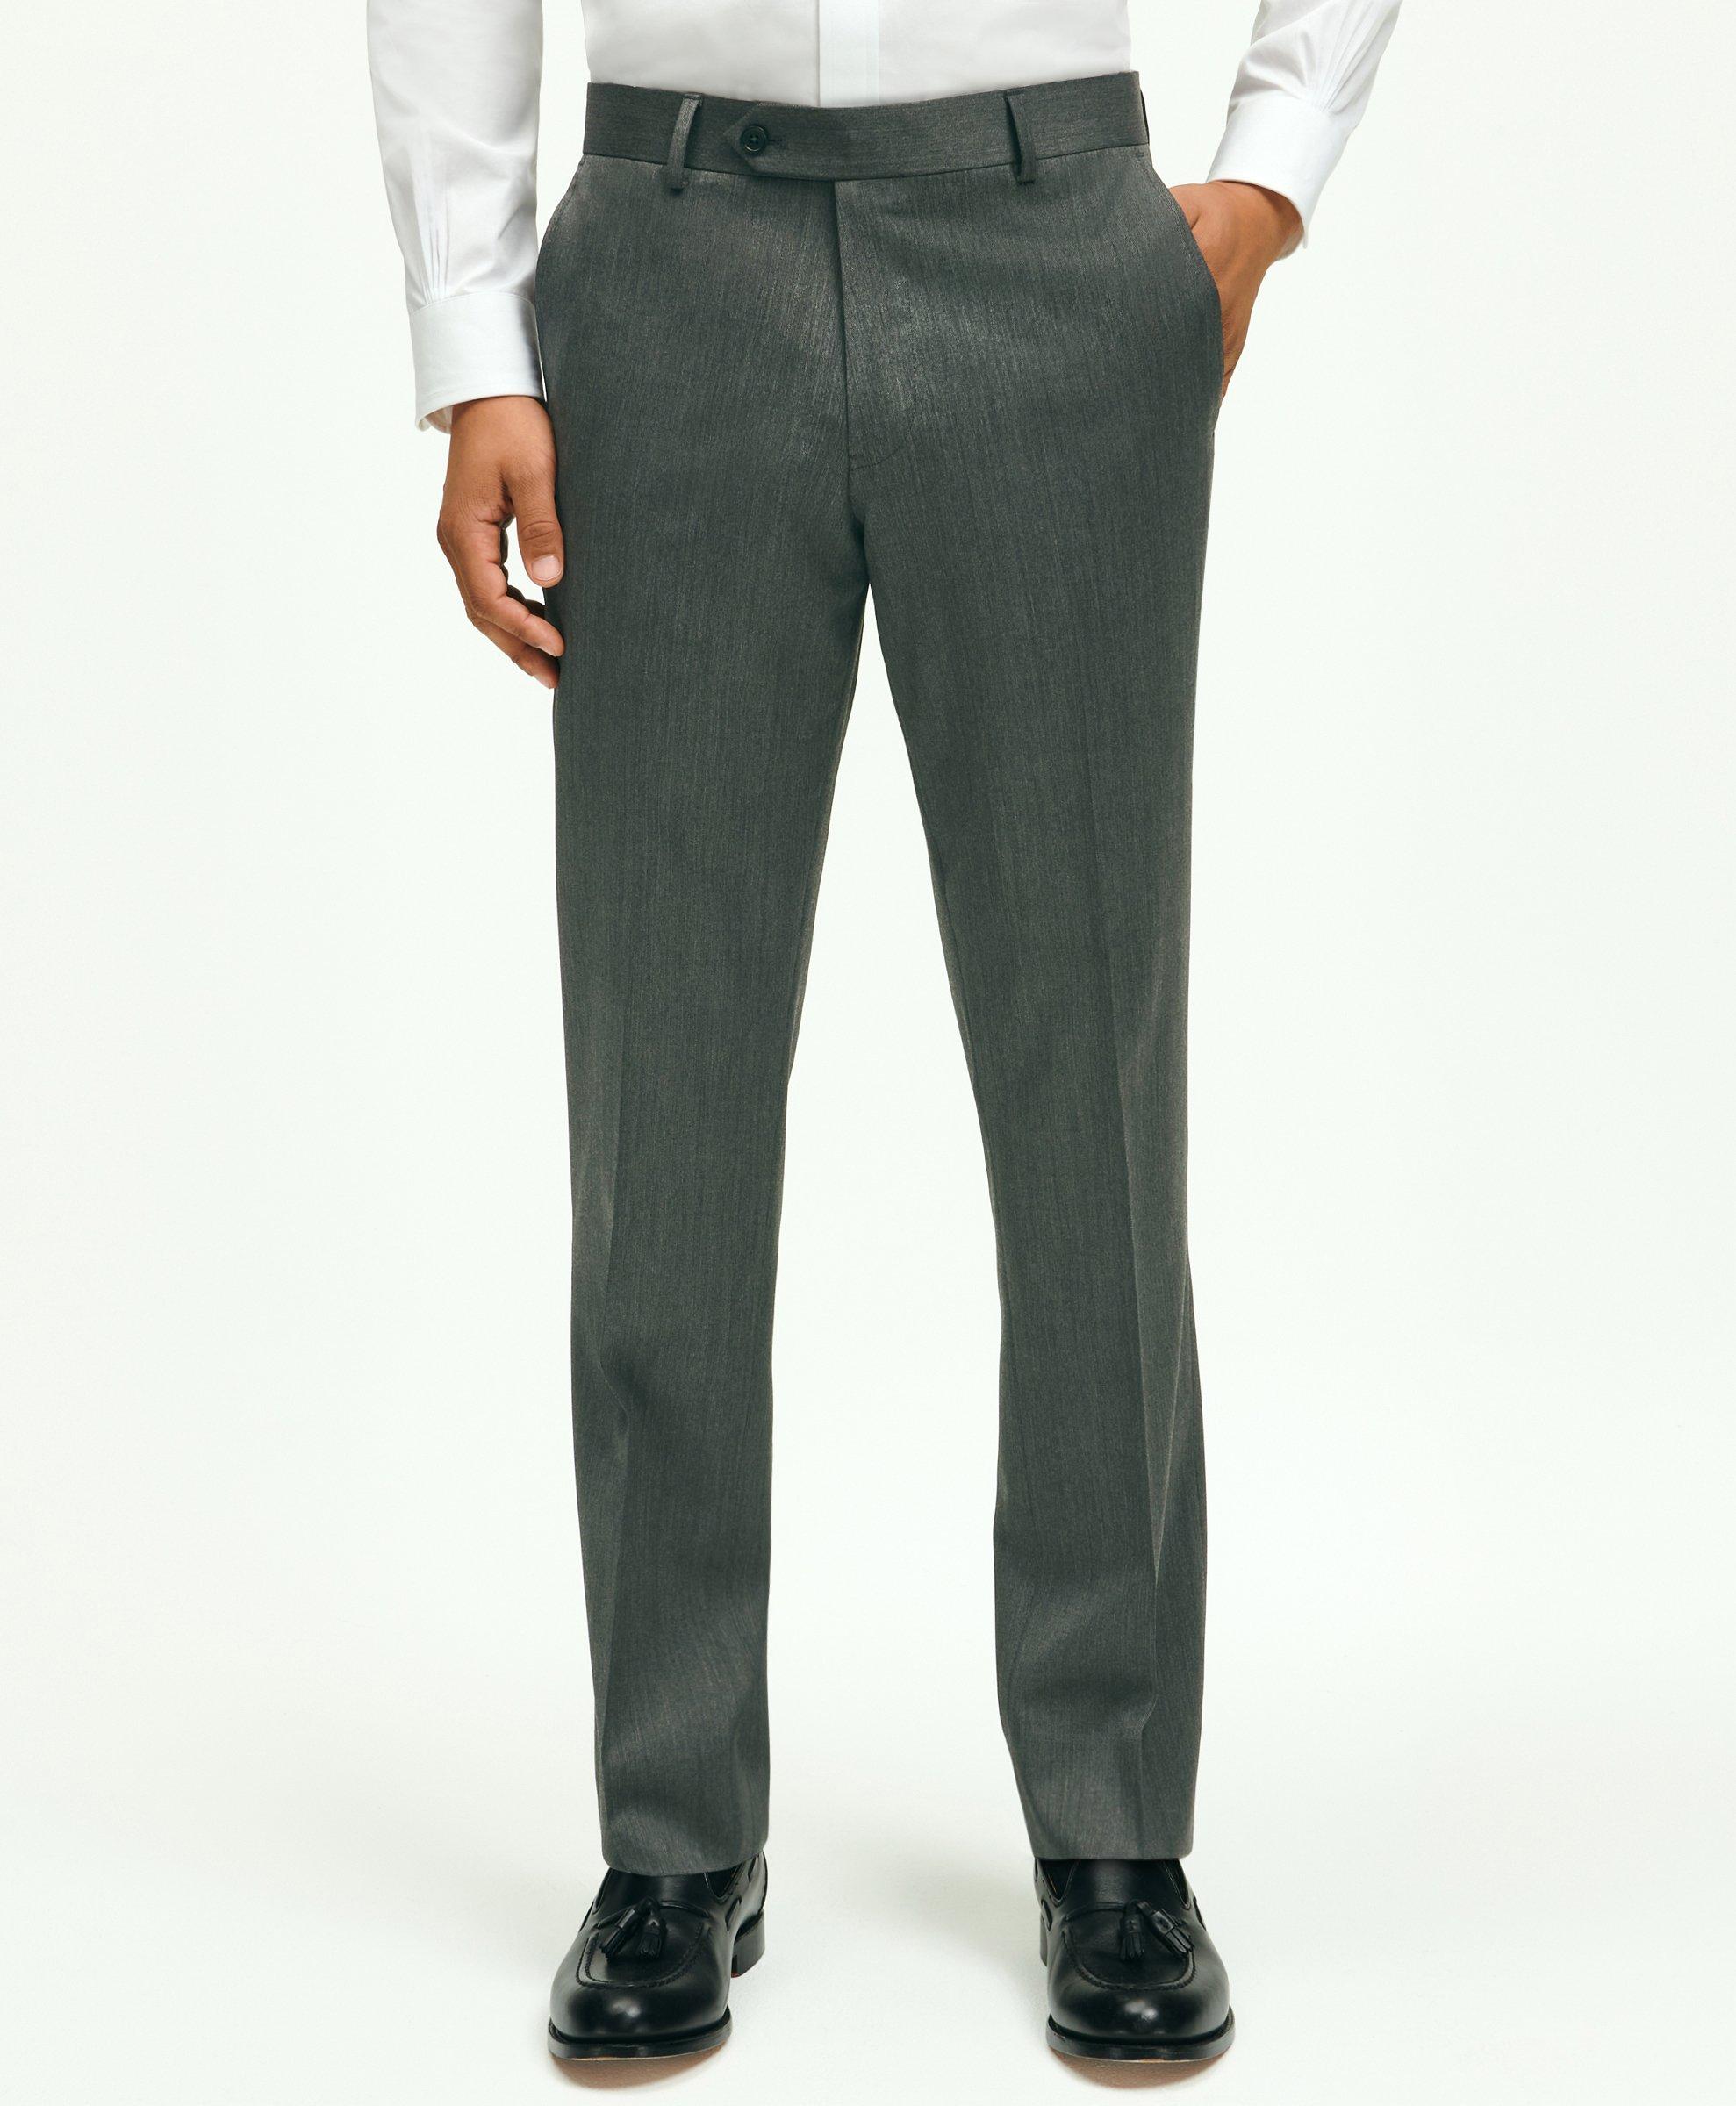 Shop Men's Dress Pants, Premium Trousers & Pants